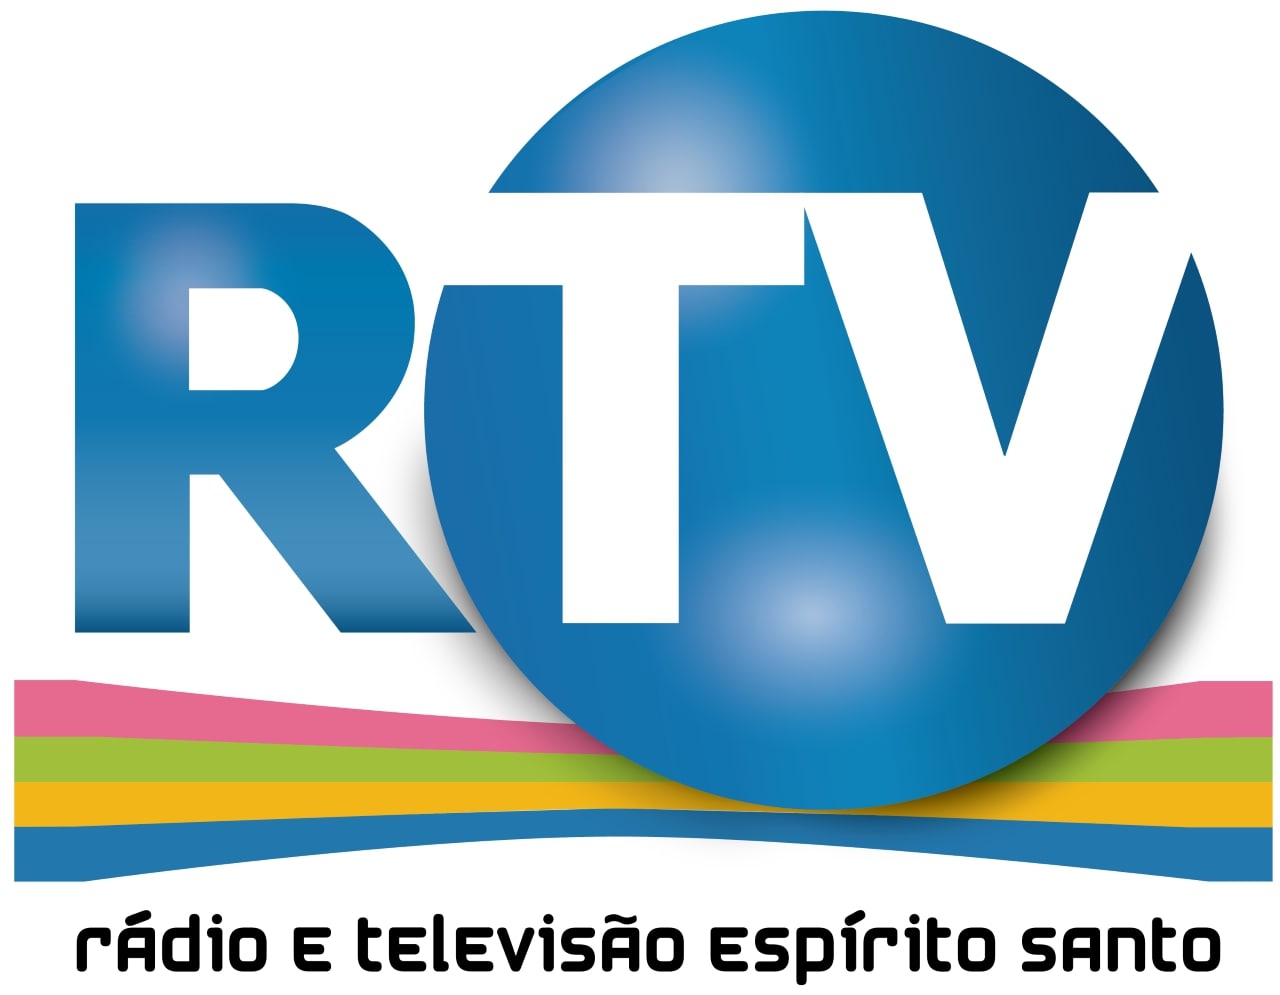 rtv-es-radio-e-televisao-espirito-santo